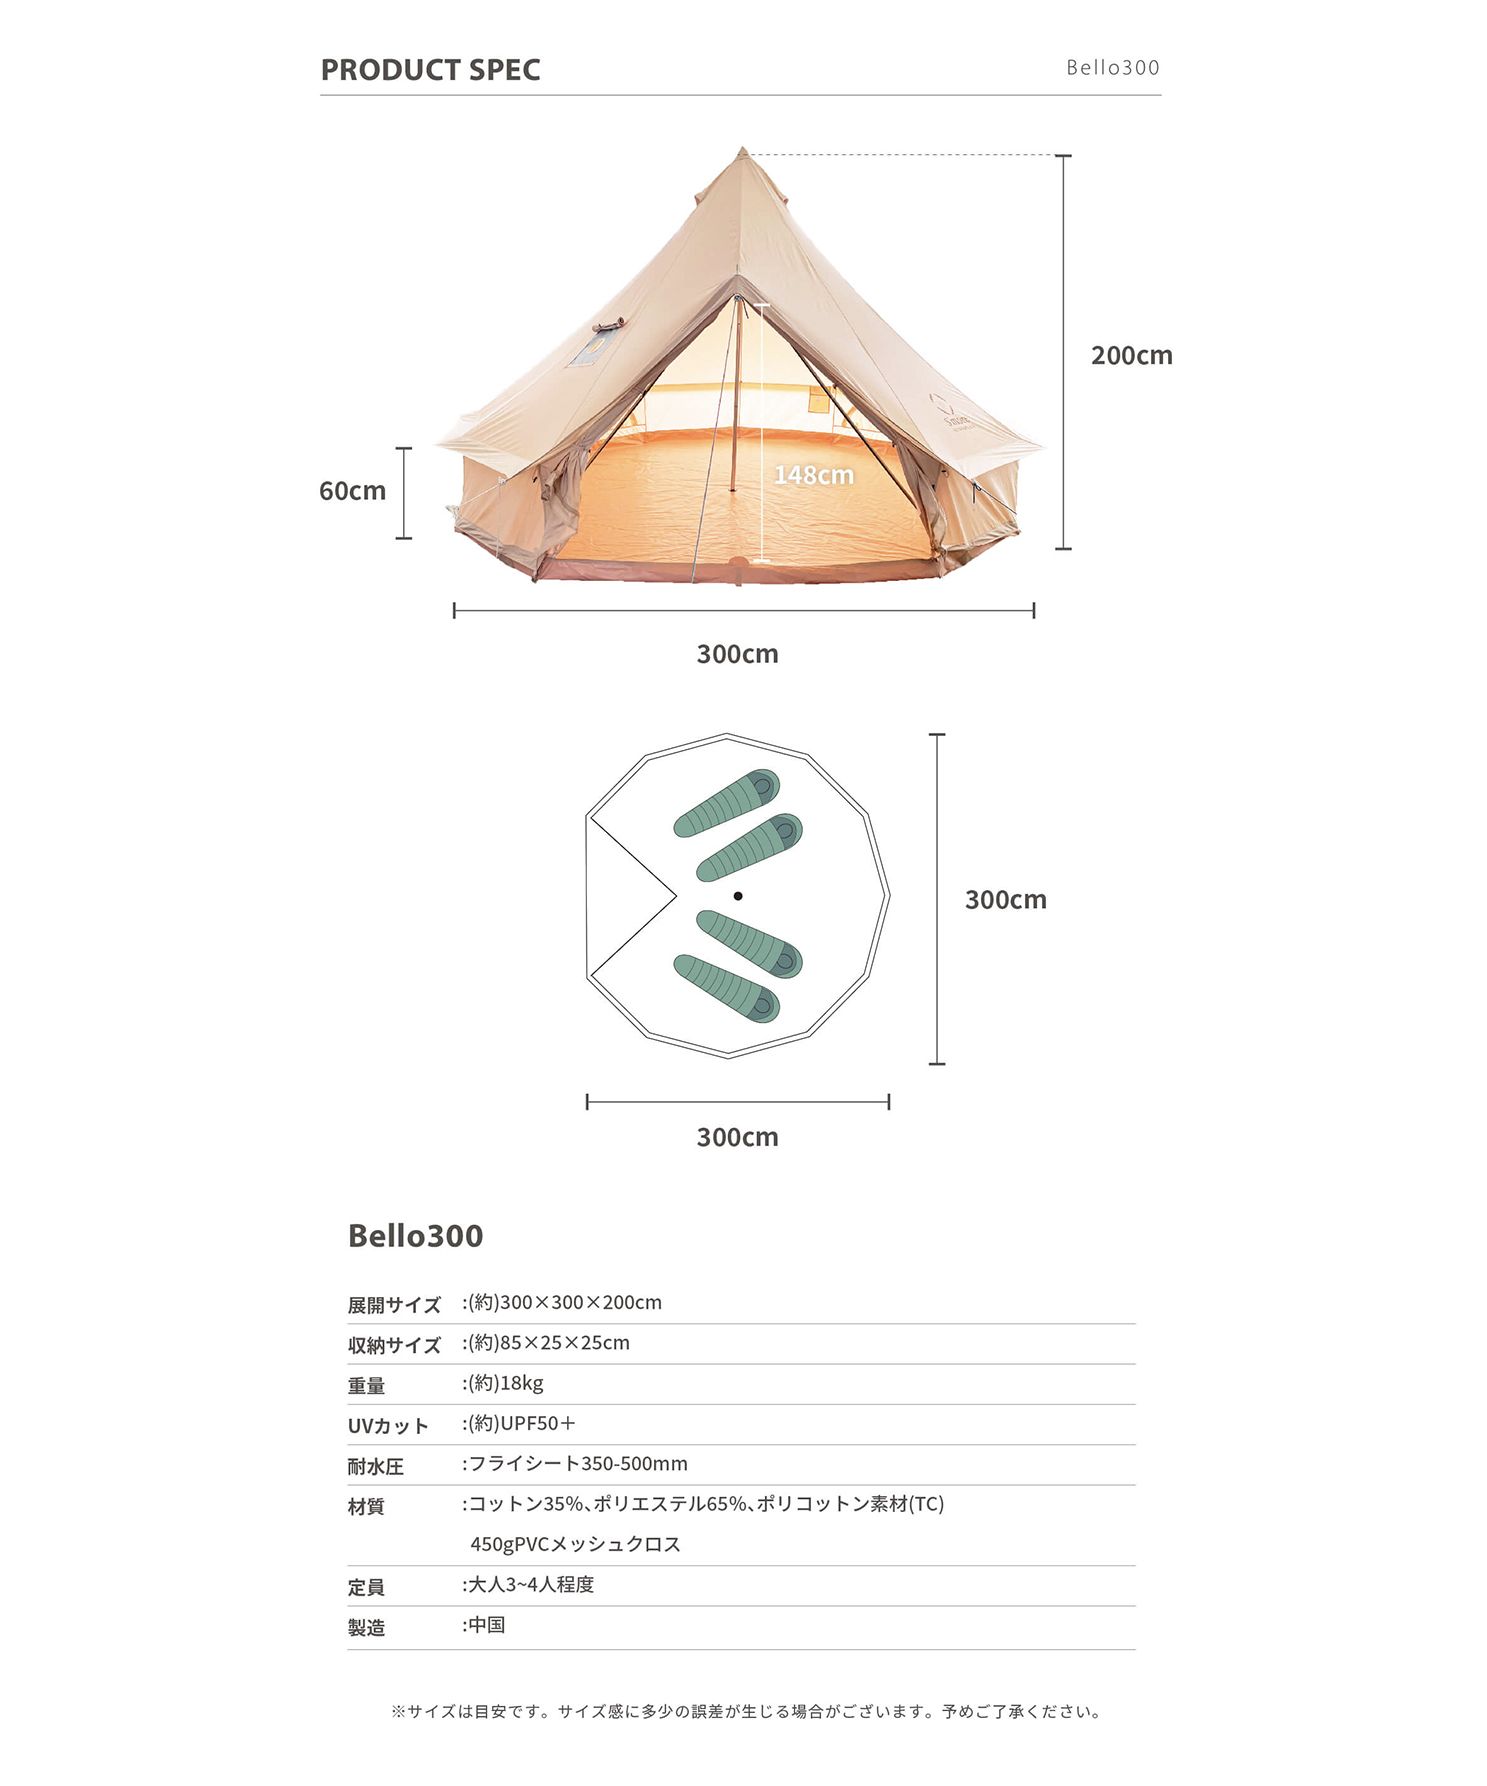 S'more /Bello 300】 ベル型テント テント ベル型 収納バッグ付き ポリ